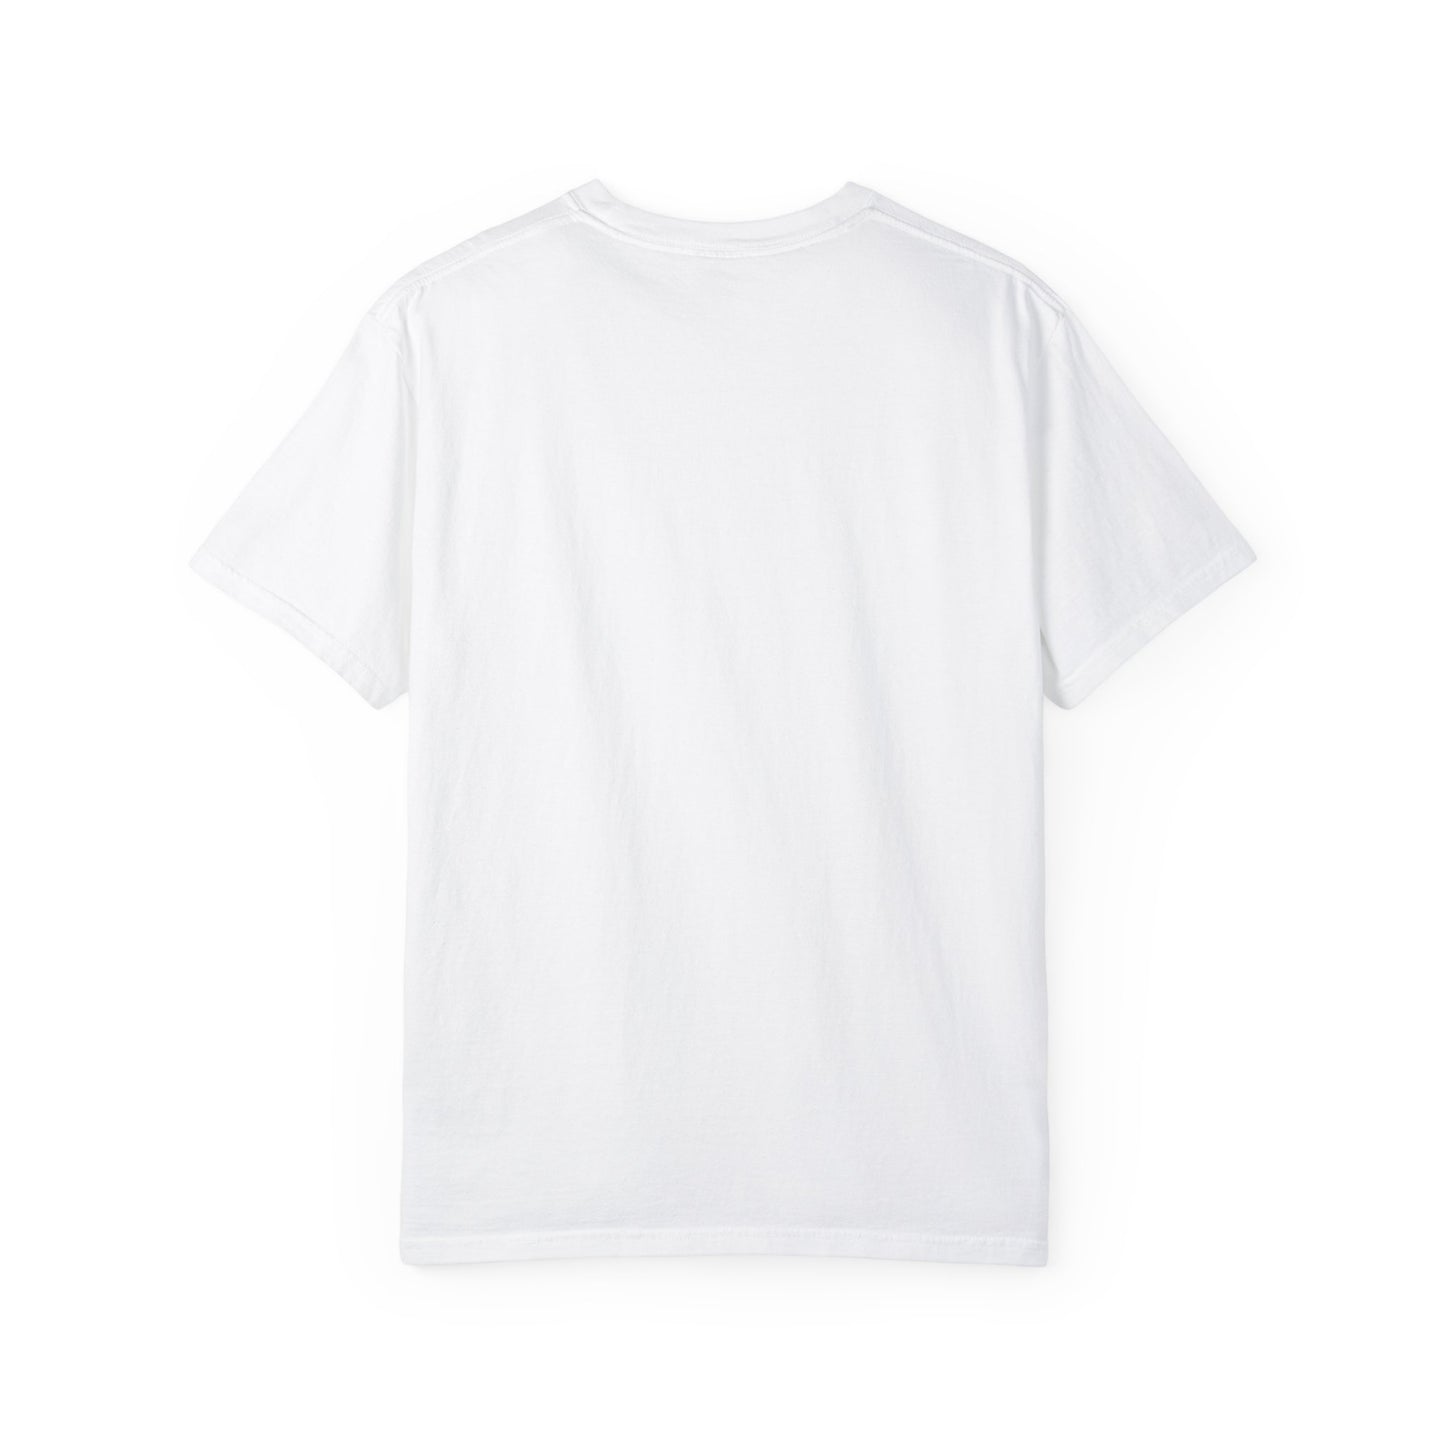 Unisex Keep it Simple T-shirt